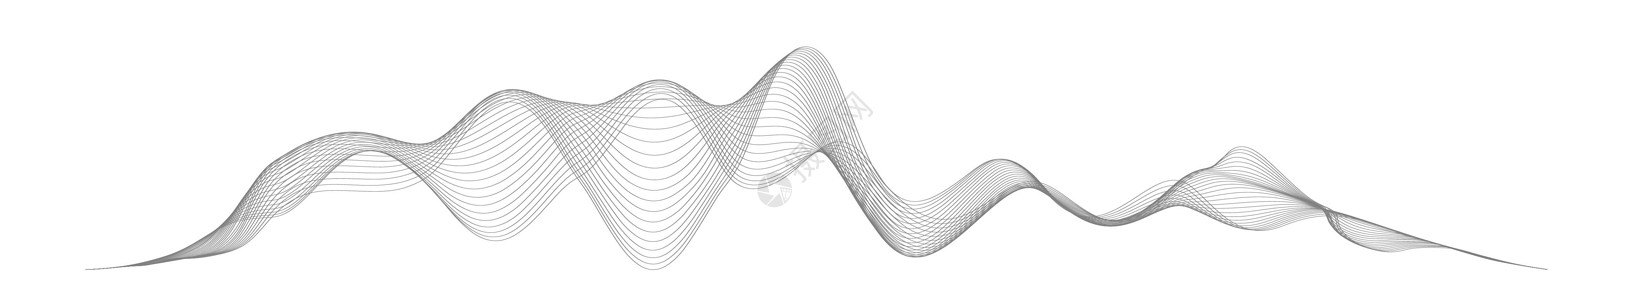 在白色背景上的抽象风格的声波 抽象数字信号波线 矢量音乐语音振动歌曲波形数字频谱音频脉冲和波形频率均衡器收音机标识波浪状韵律配乐图片